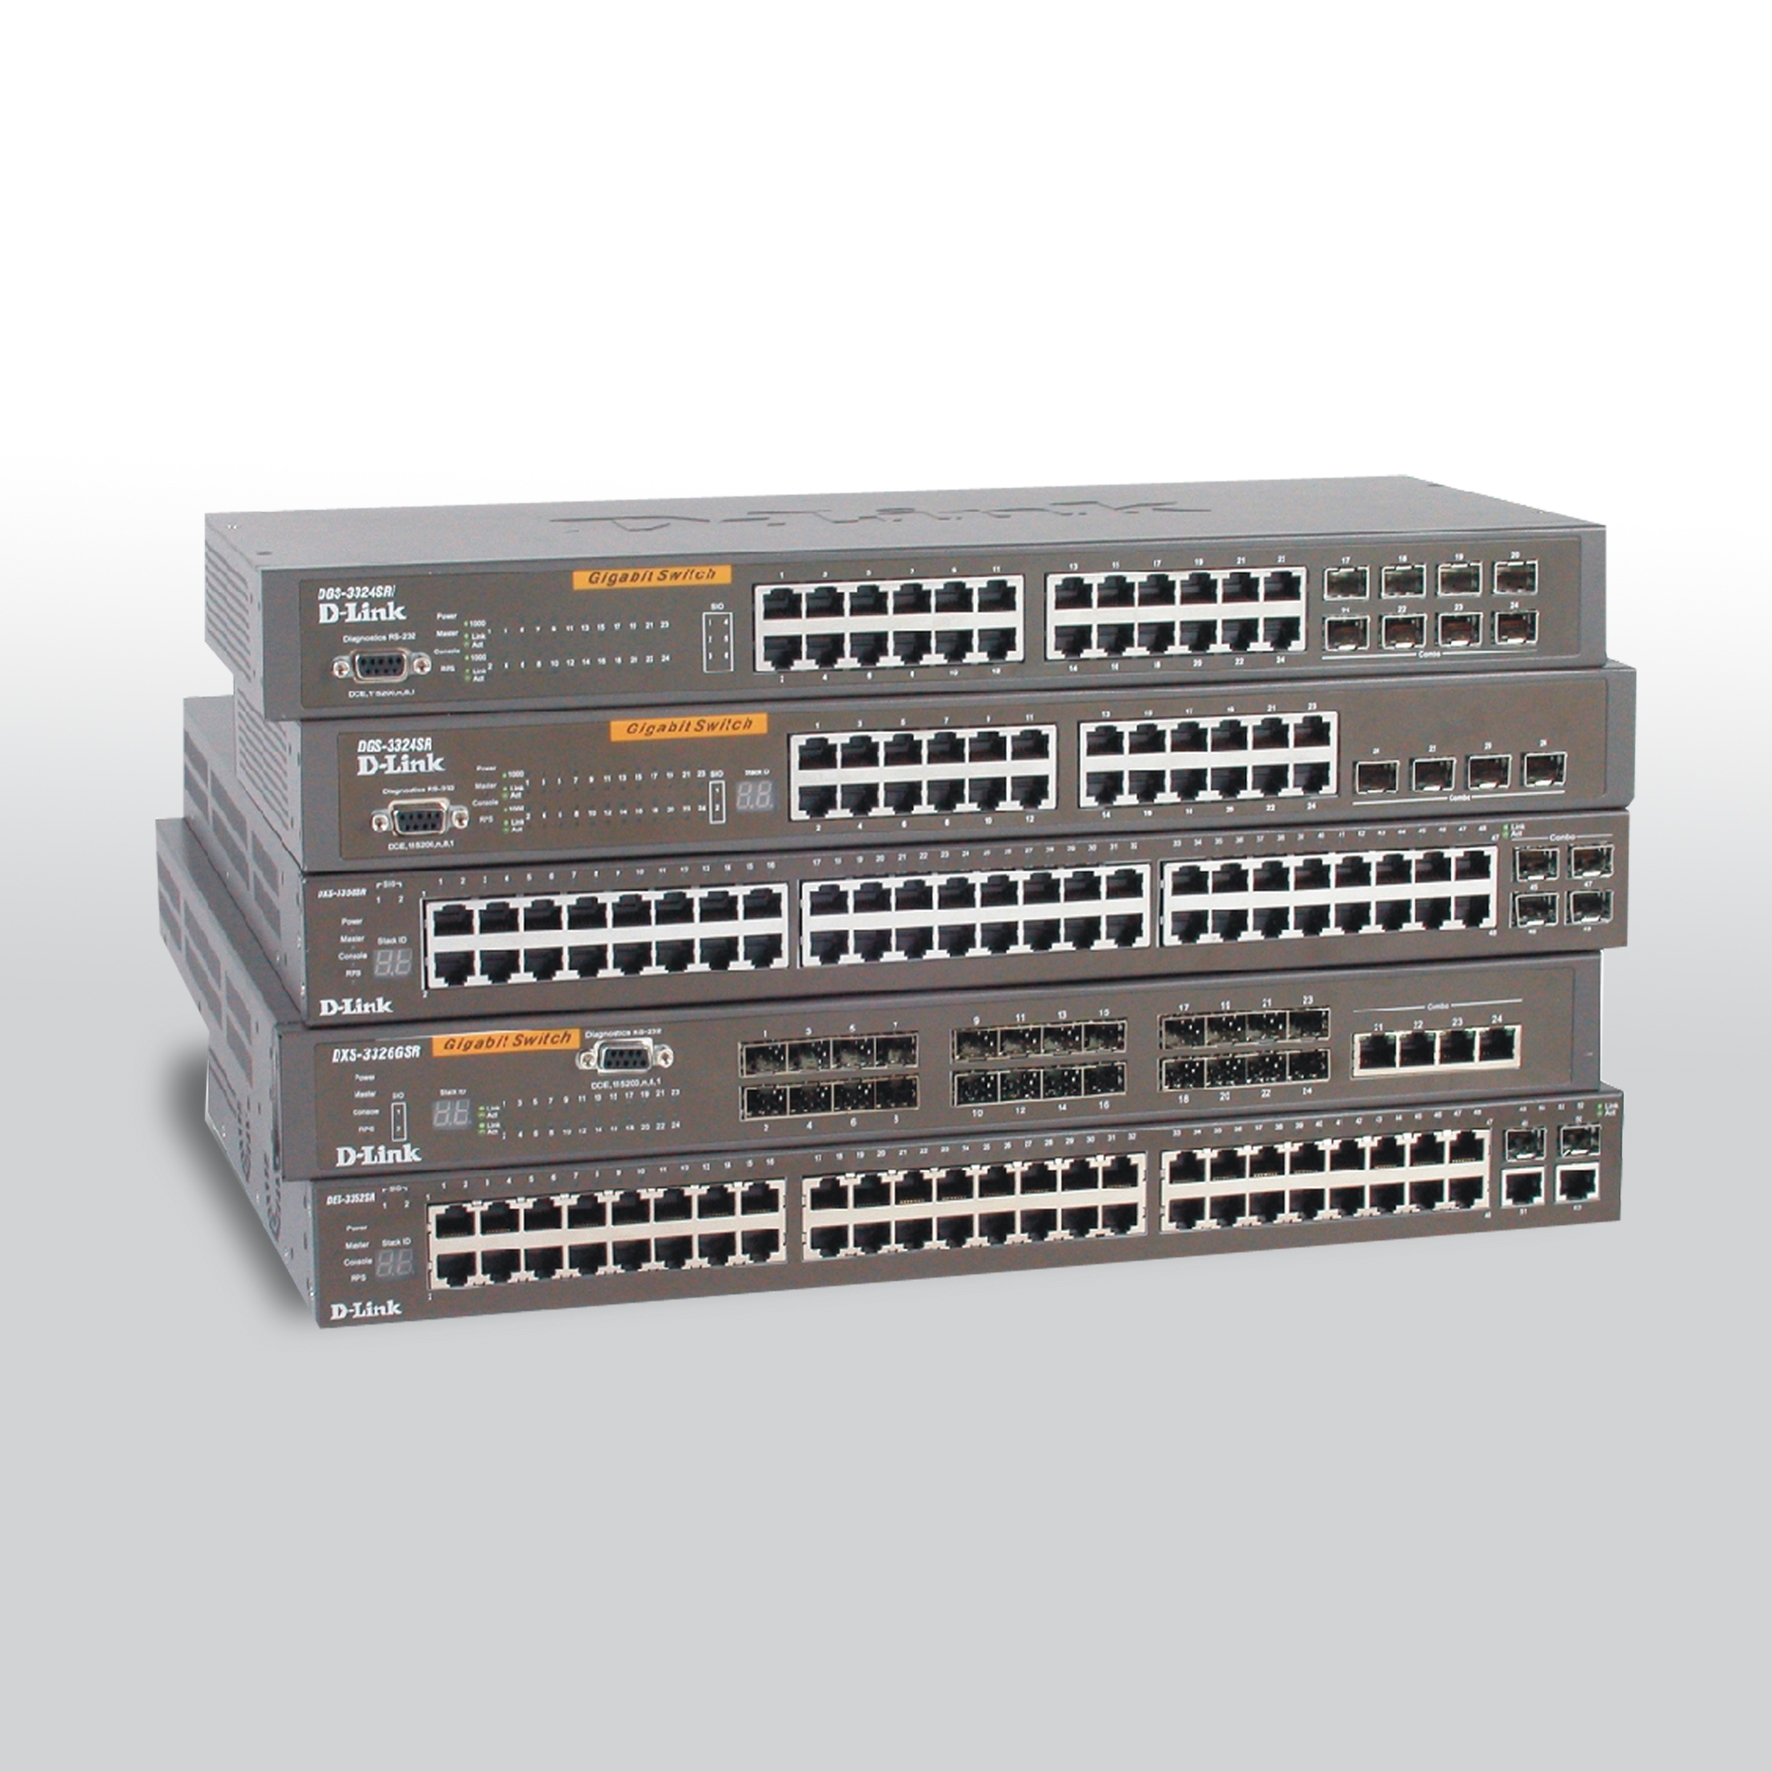 xStack Stackable L3 Ethernet Management Switch Series (xSt k St kable L3 Ethernet Switch серии управлению)